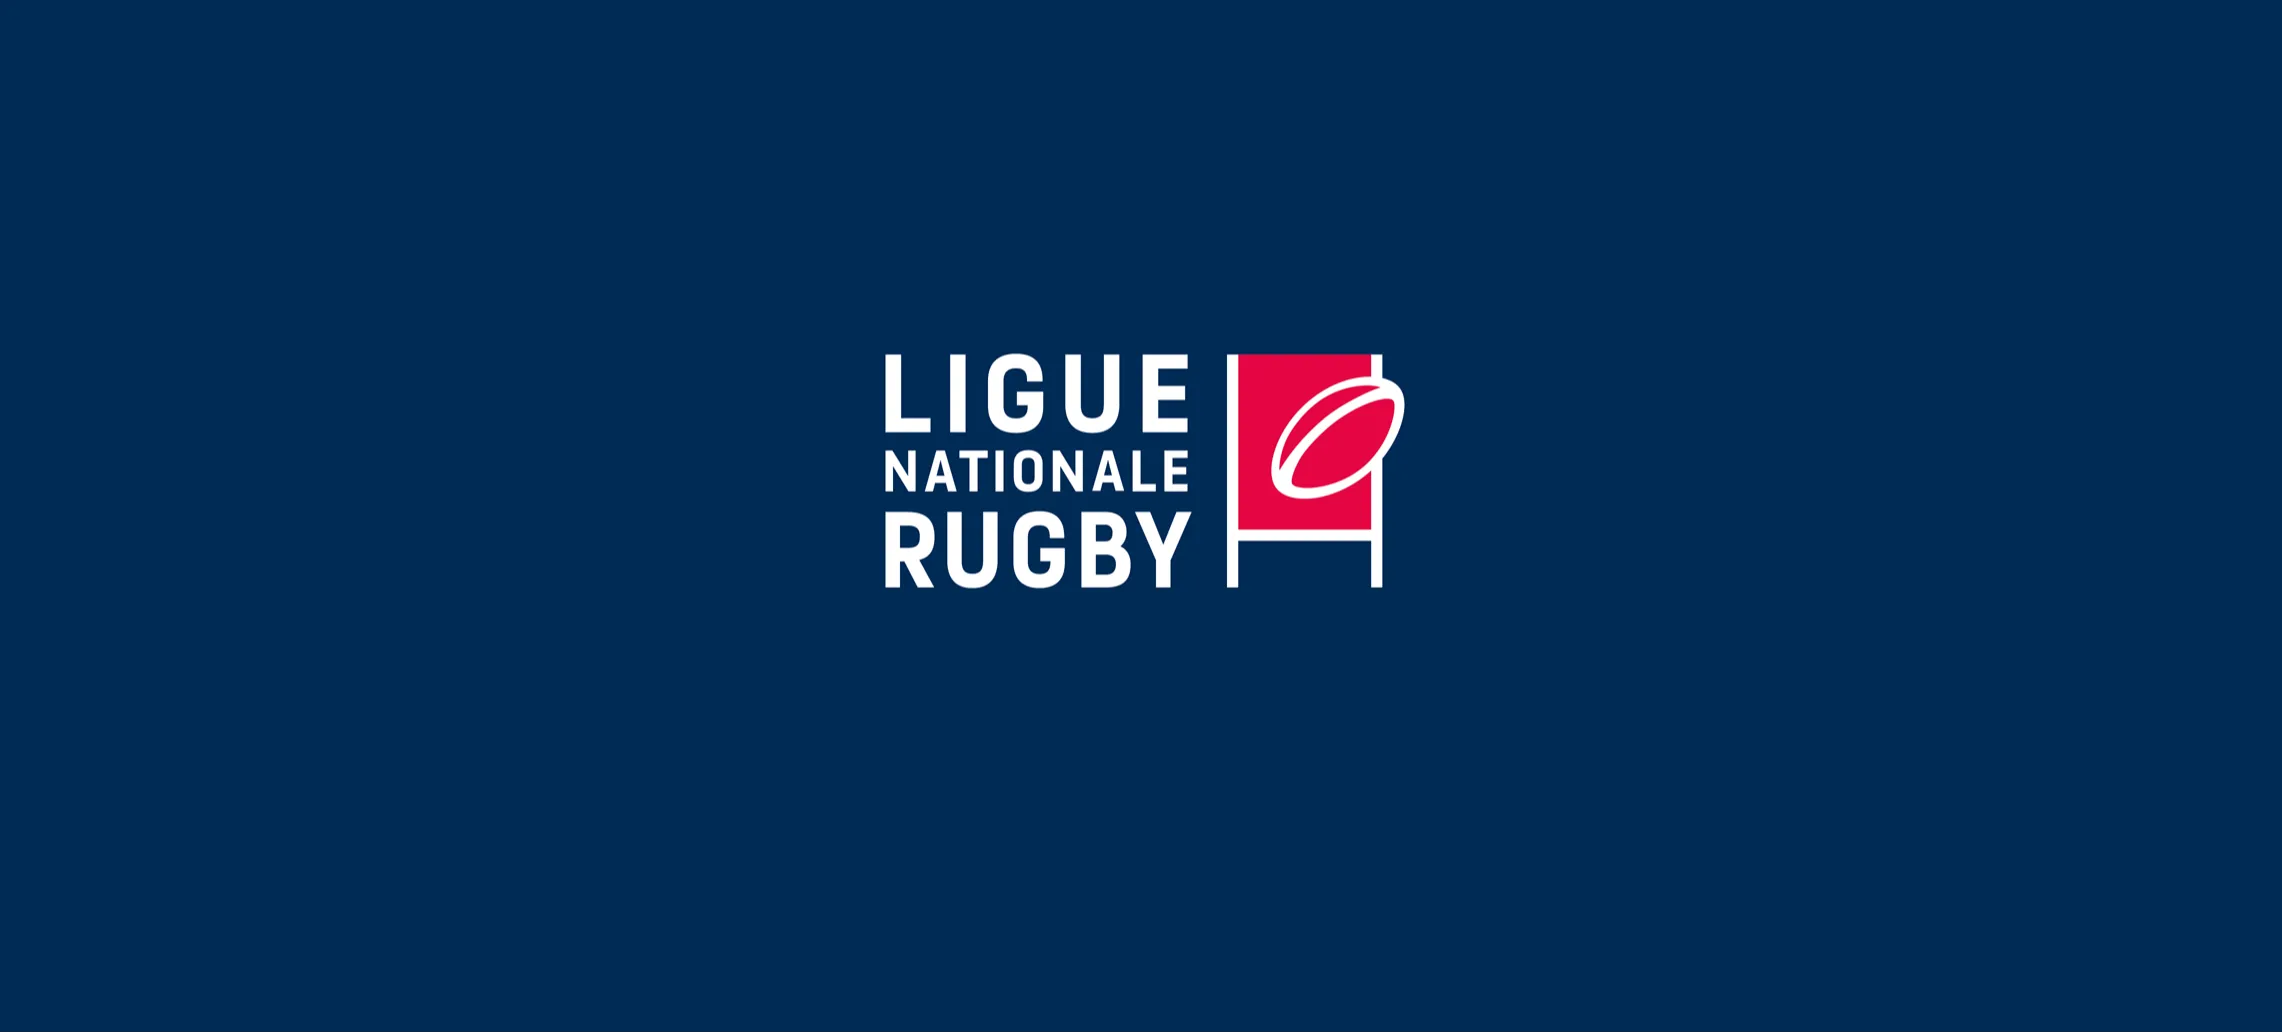 La Ligue Nationale de Rugby offre un tout nouveau terrain de jeu aux fans de rugby du monde entier !